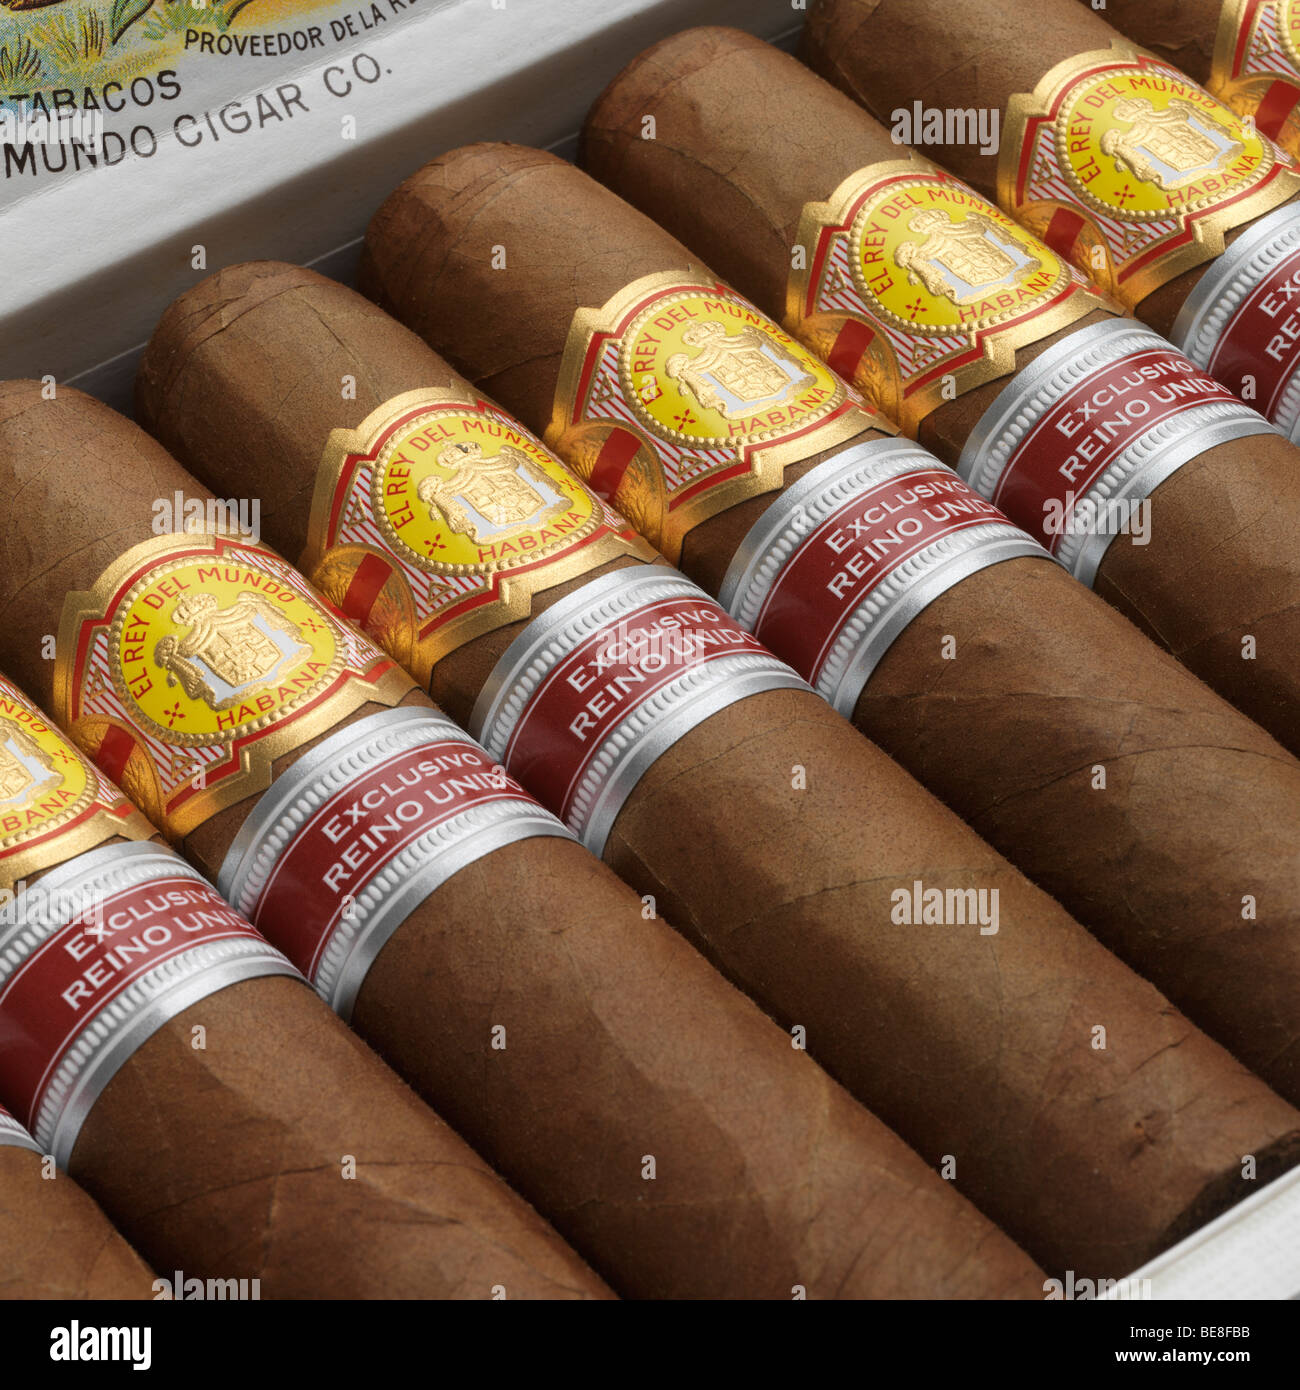 Una caja de cigarros de La Habana. Foto de stock